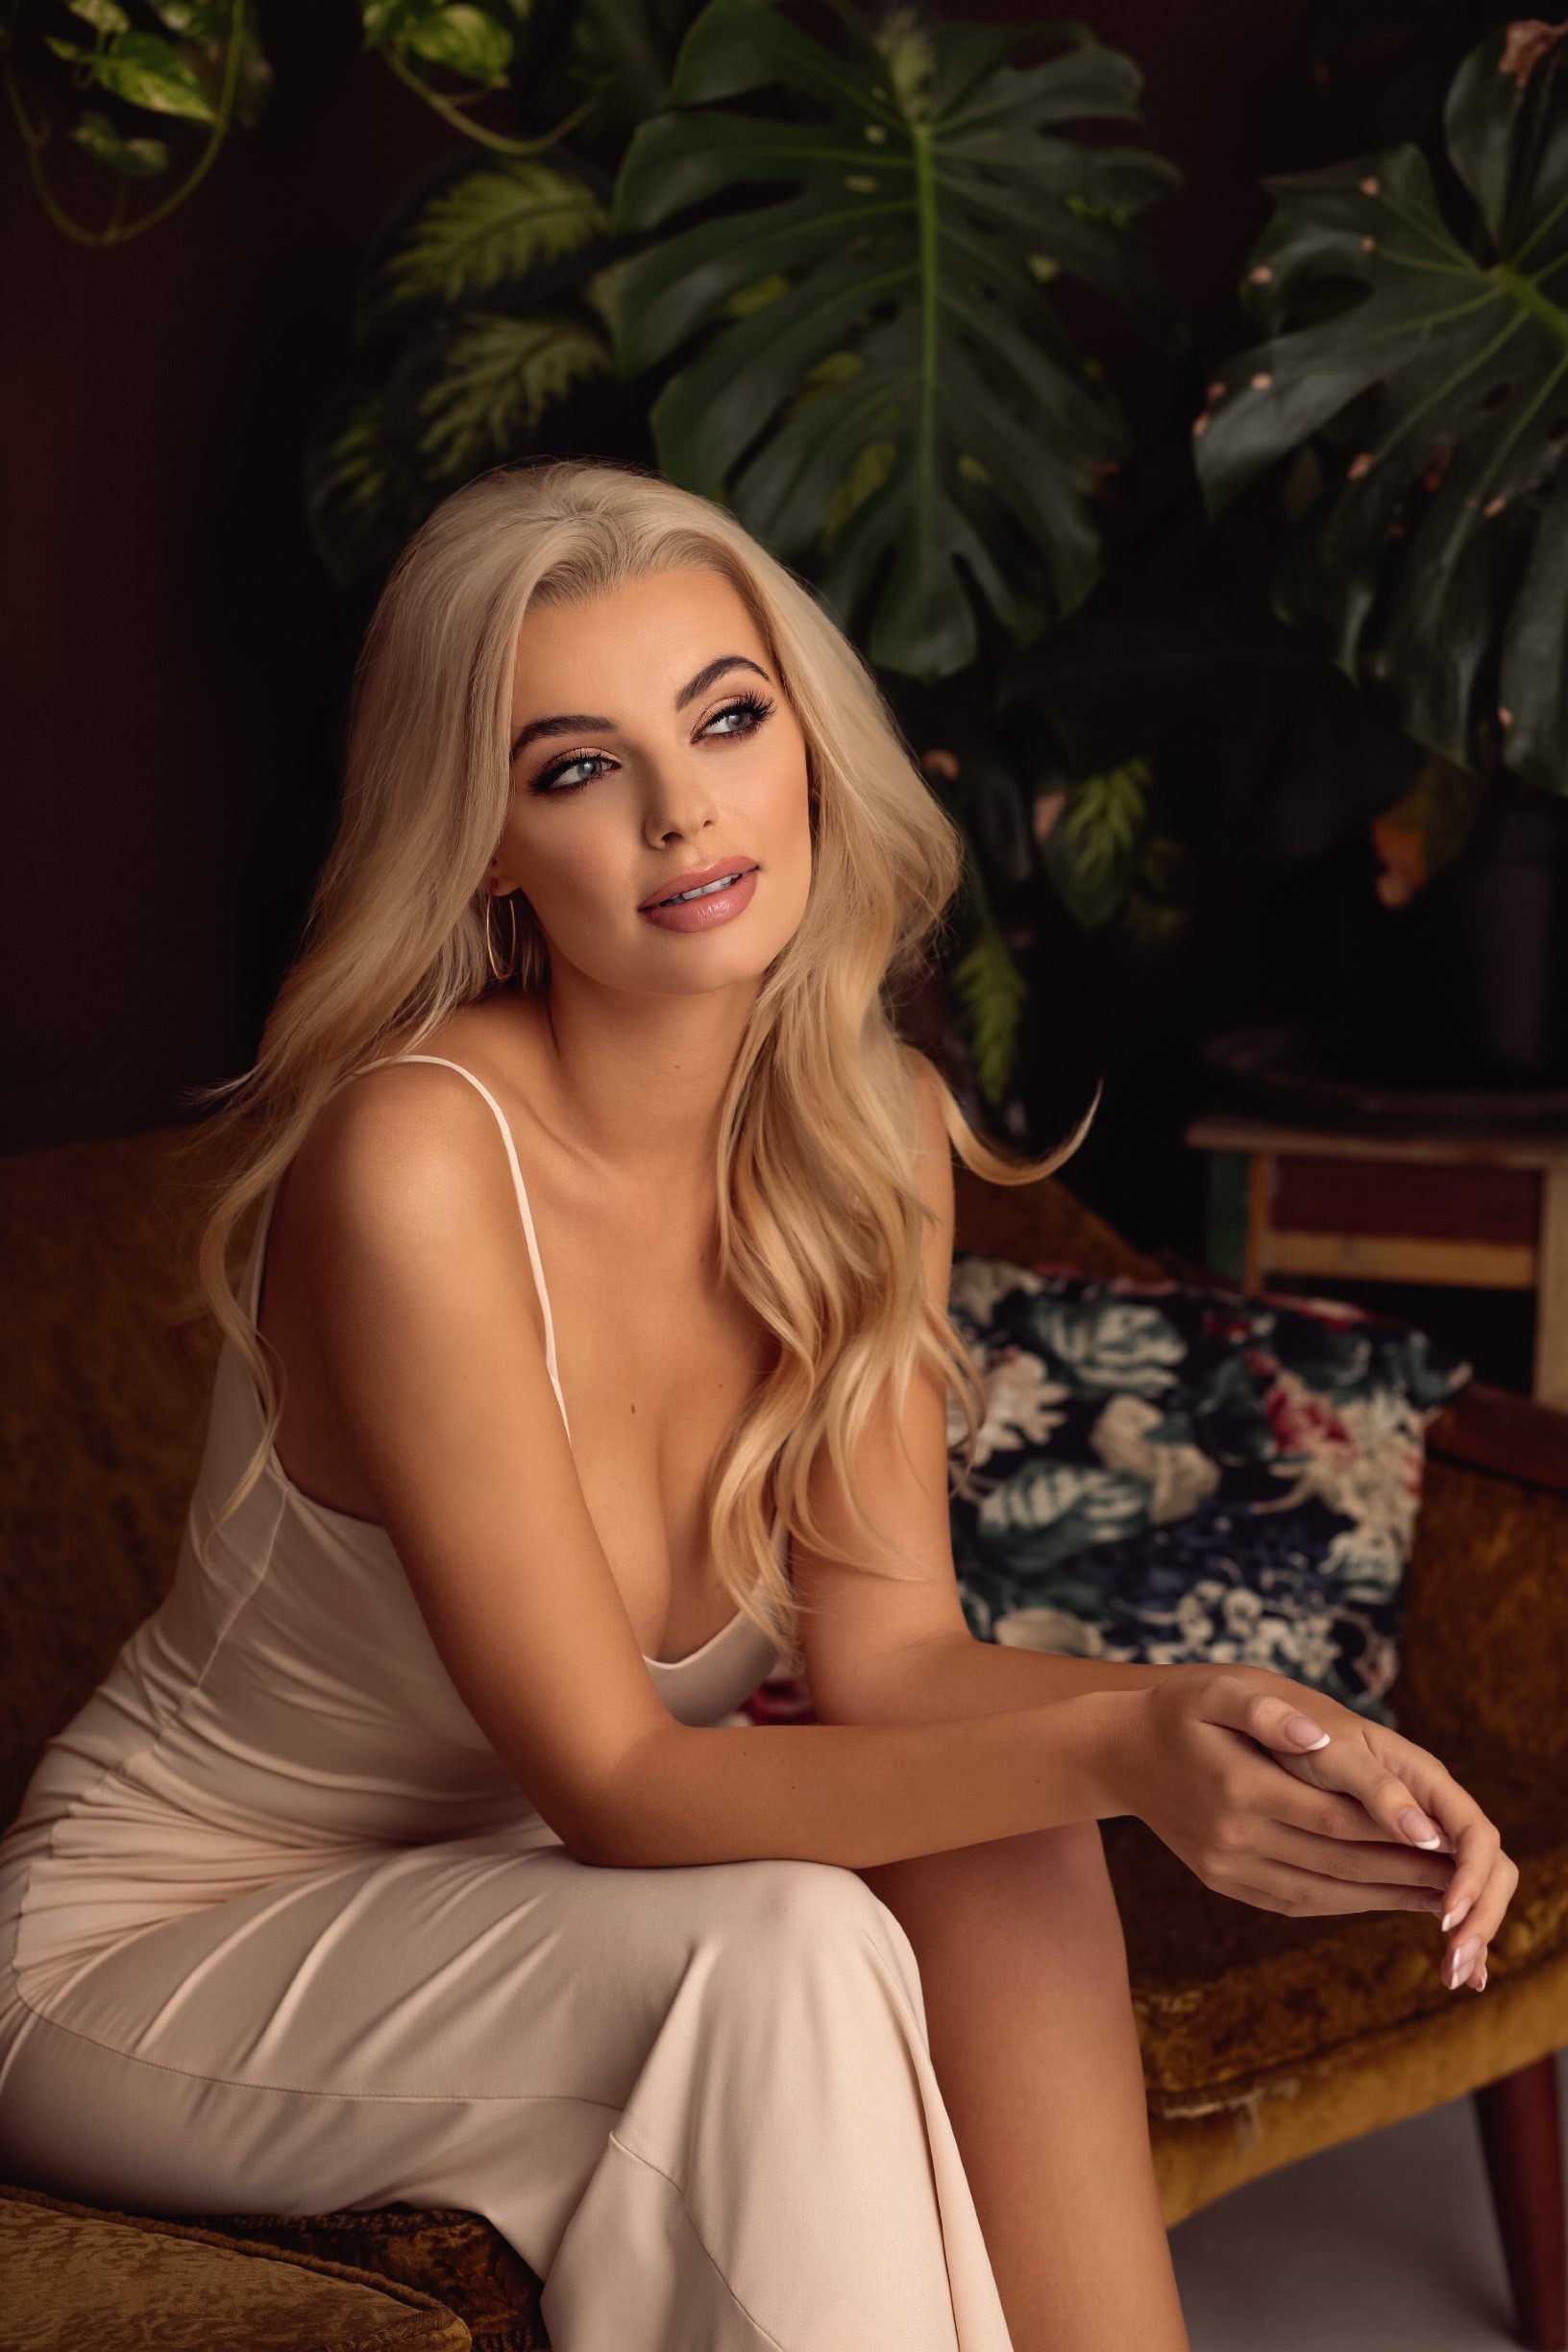 MISS WORLD 2021 – Let’s knowing Miss World Poland 2021, Karolina Bielawska